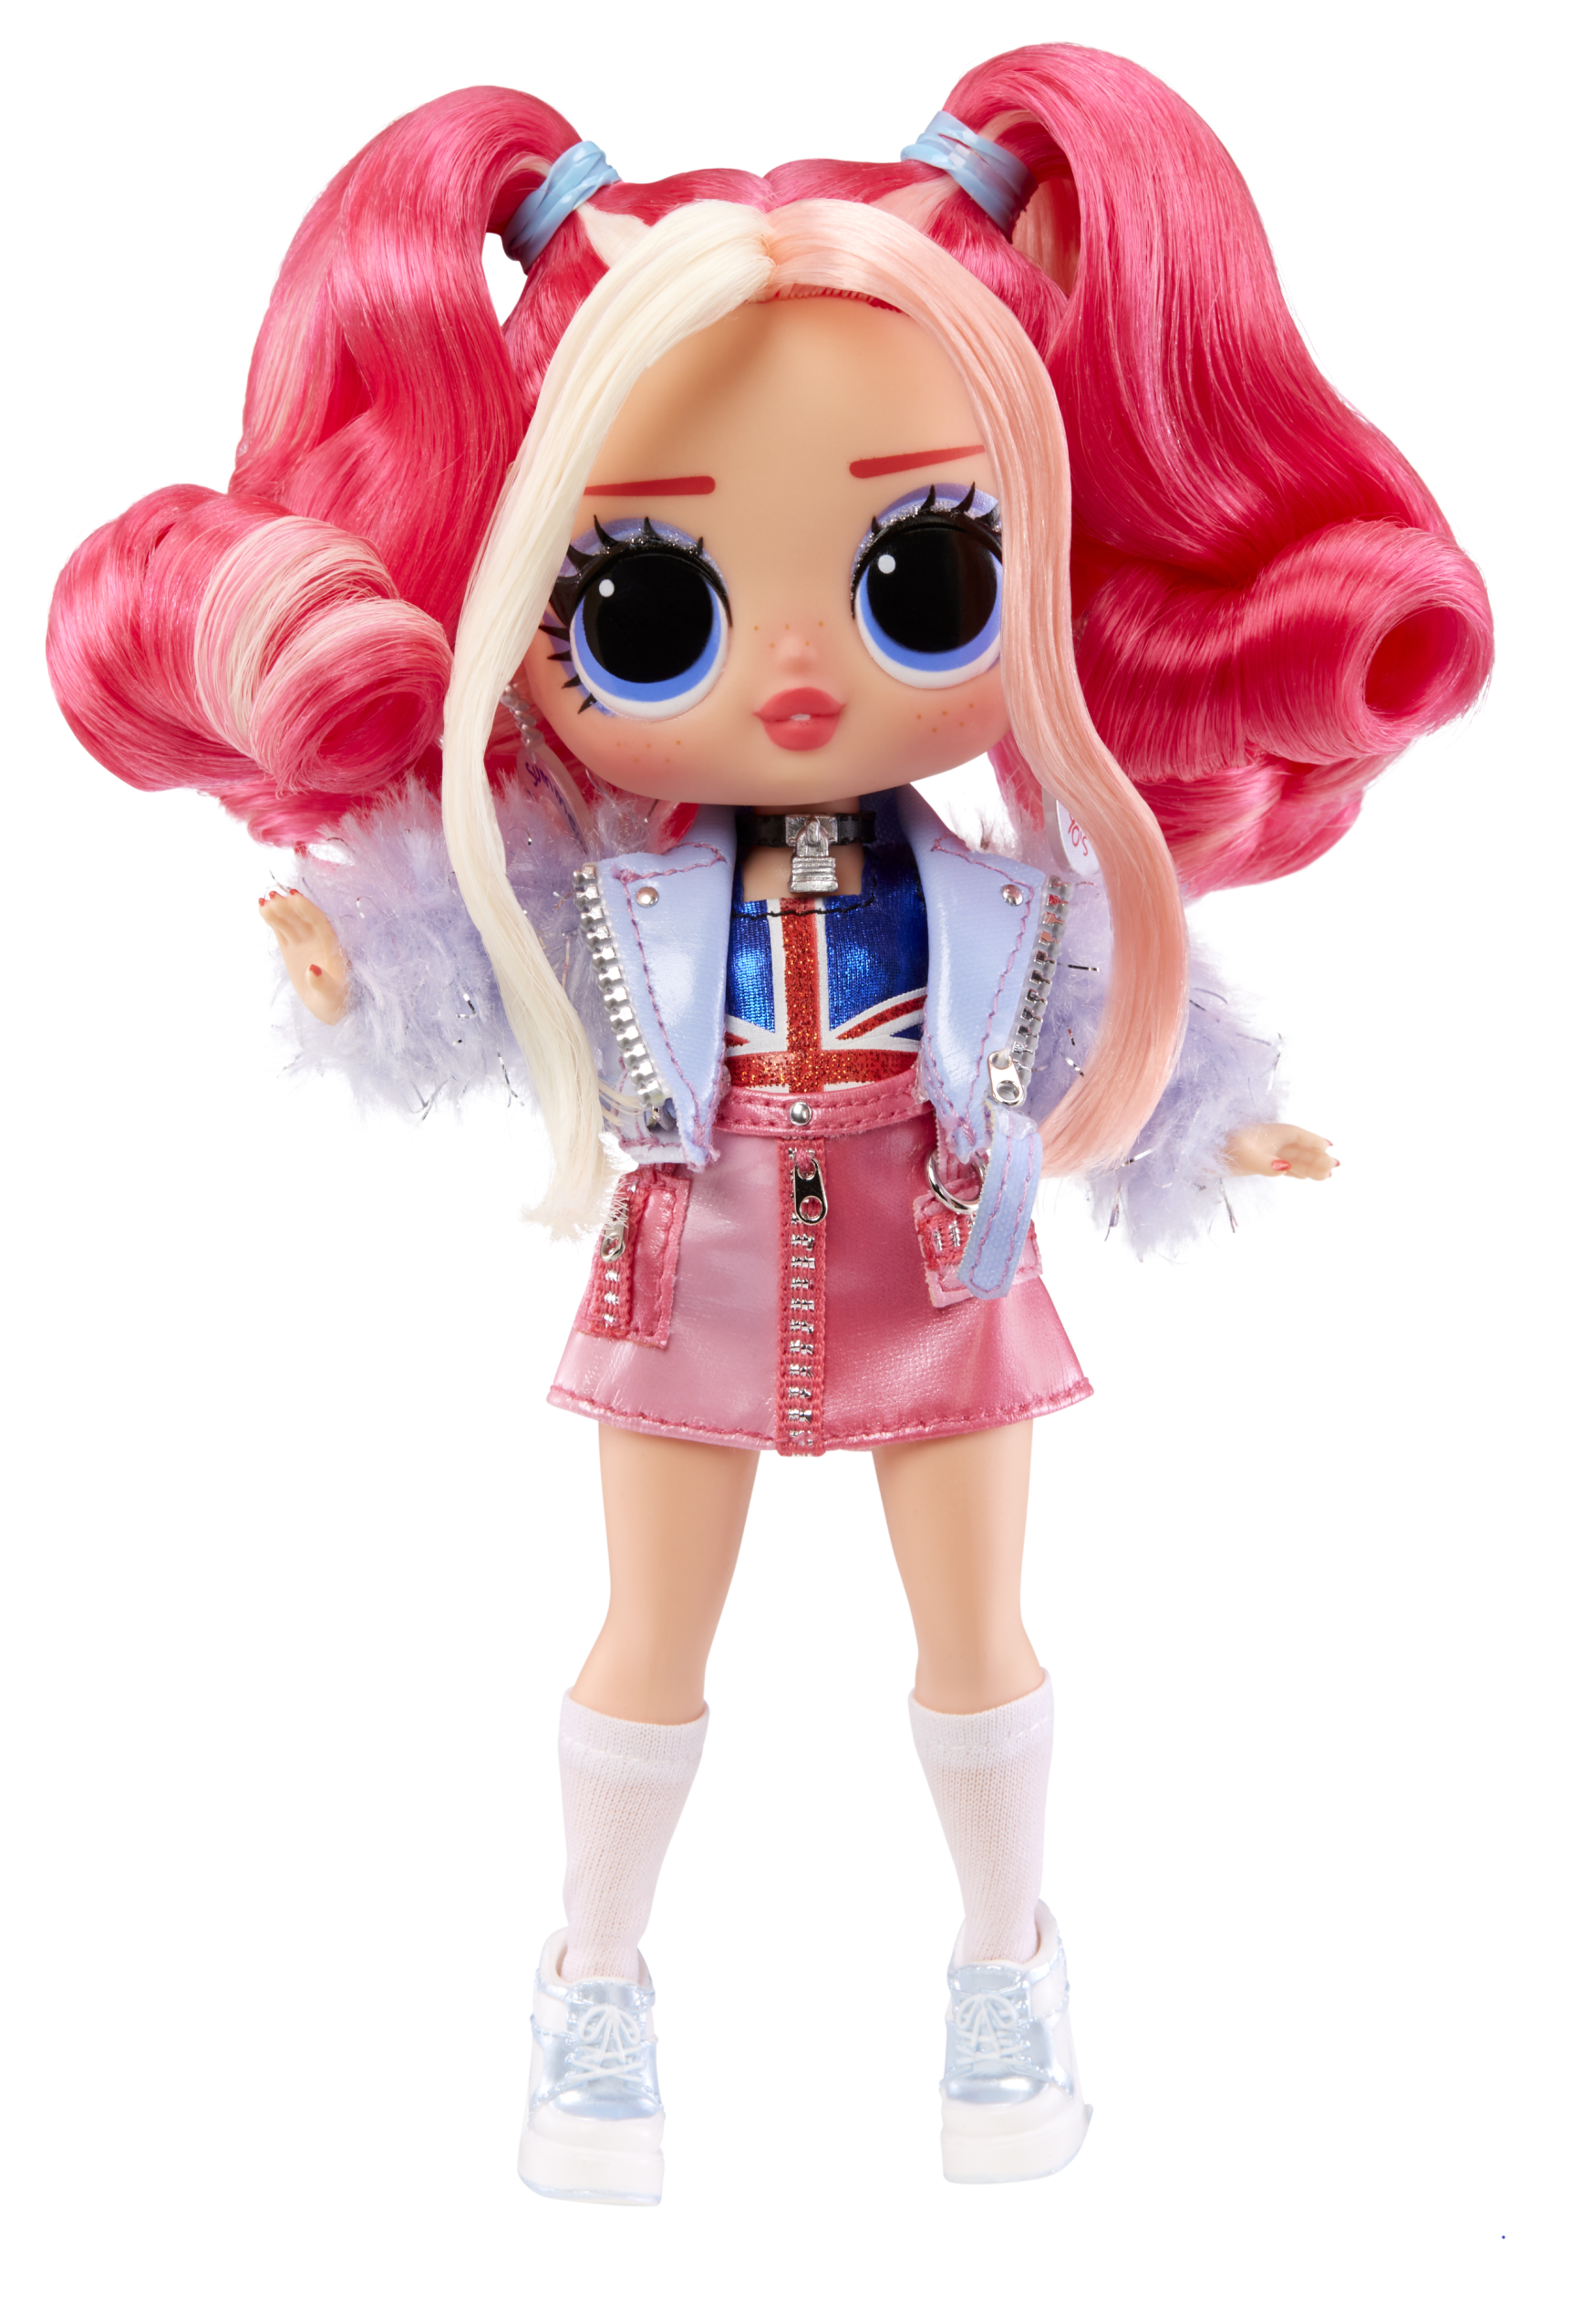 L.o.l. surprise! tweens bambole alla moda serie 3 - chloe pepper, bambola  da 15 cm con 15 sorprese tra cui vestiti, accessori e altro - Toys Center